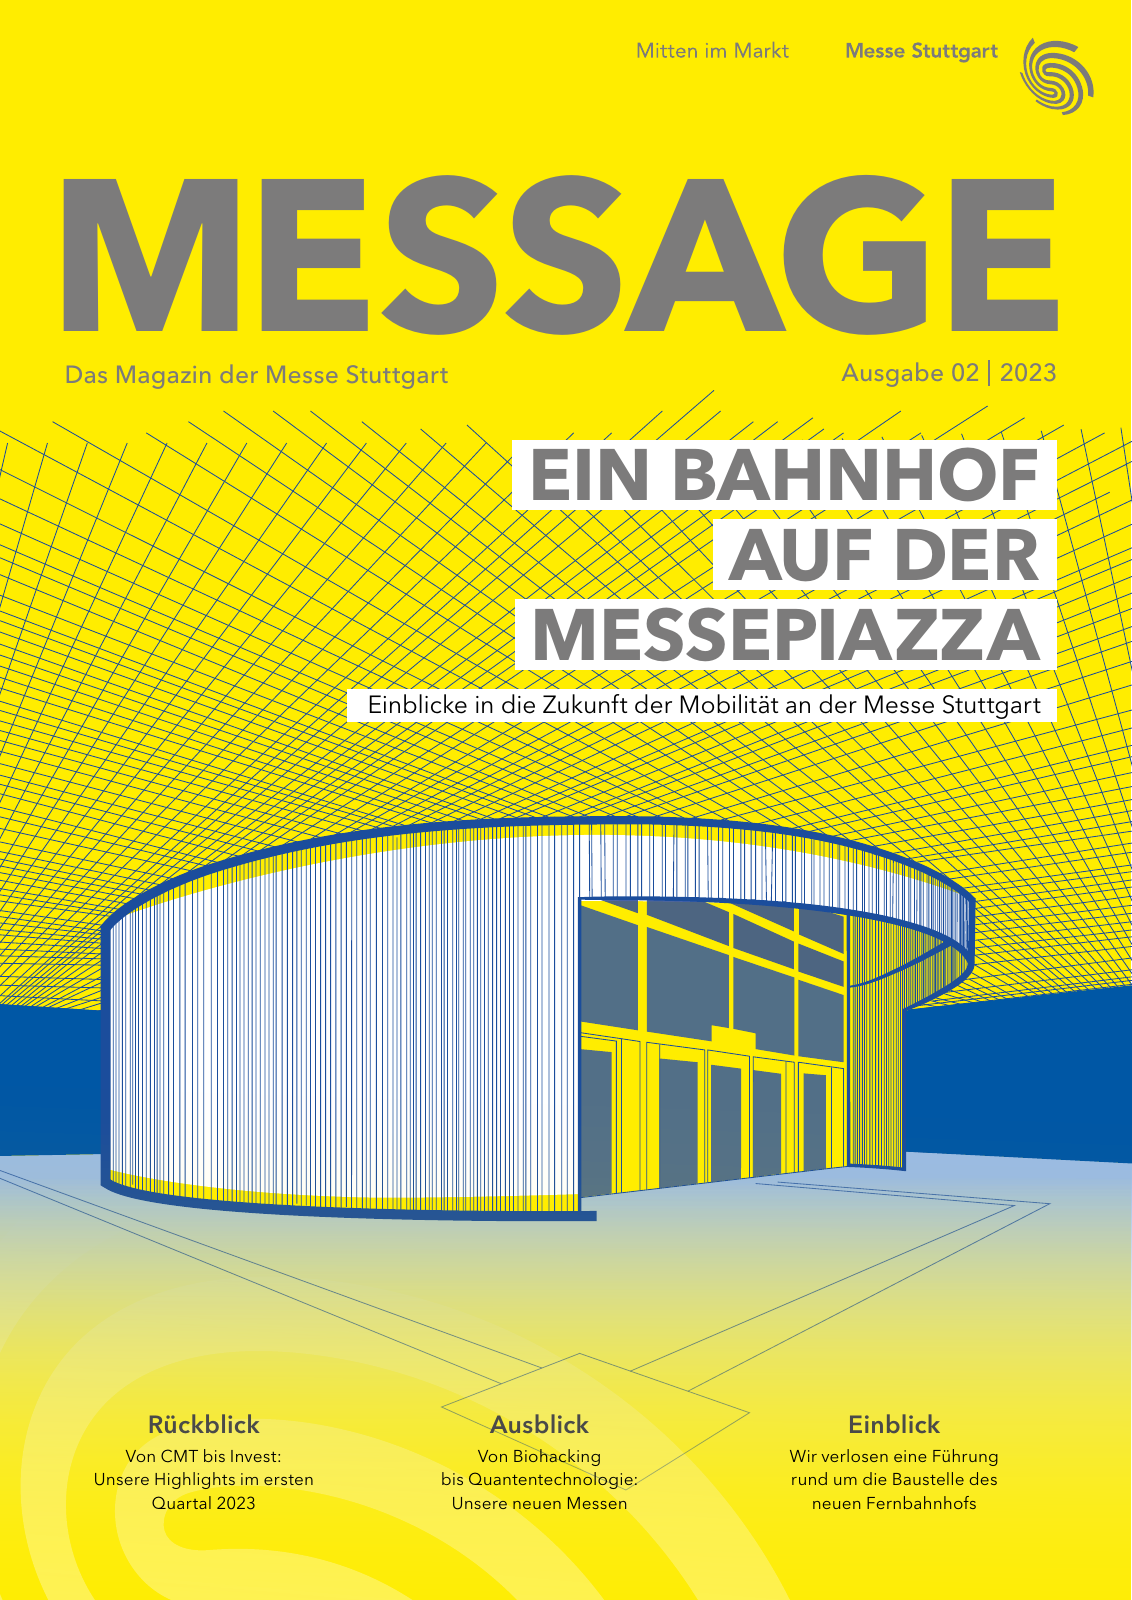 Vorschau MESSAGE - Das Magazin der Messe Stuttgart / Ausgabe 02 - 2023 Seite 1